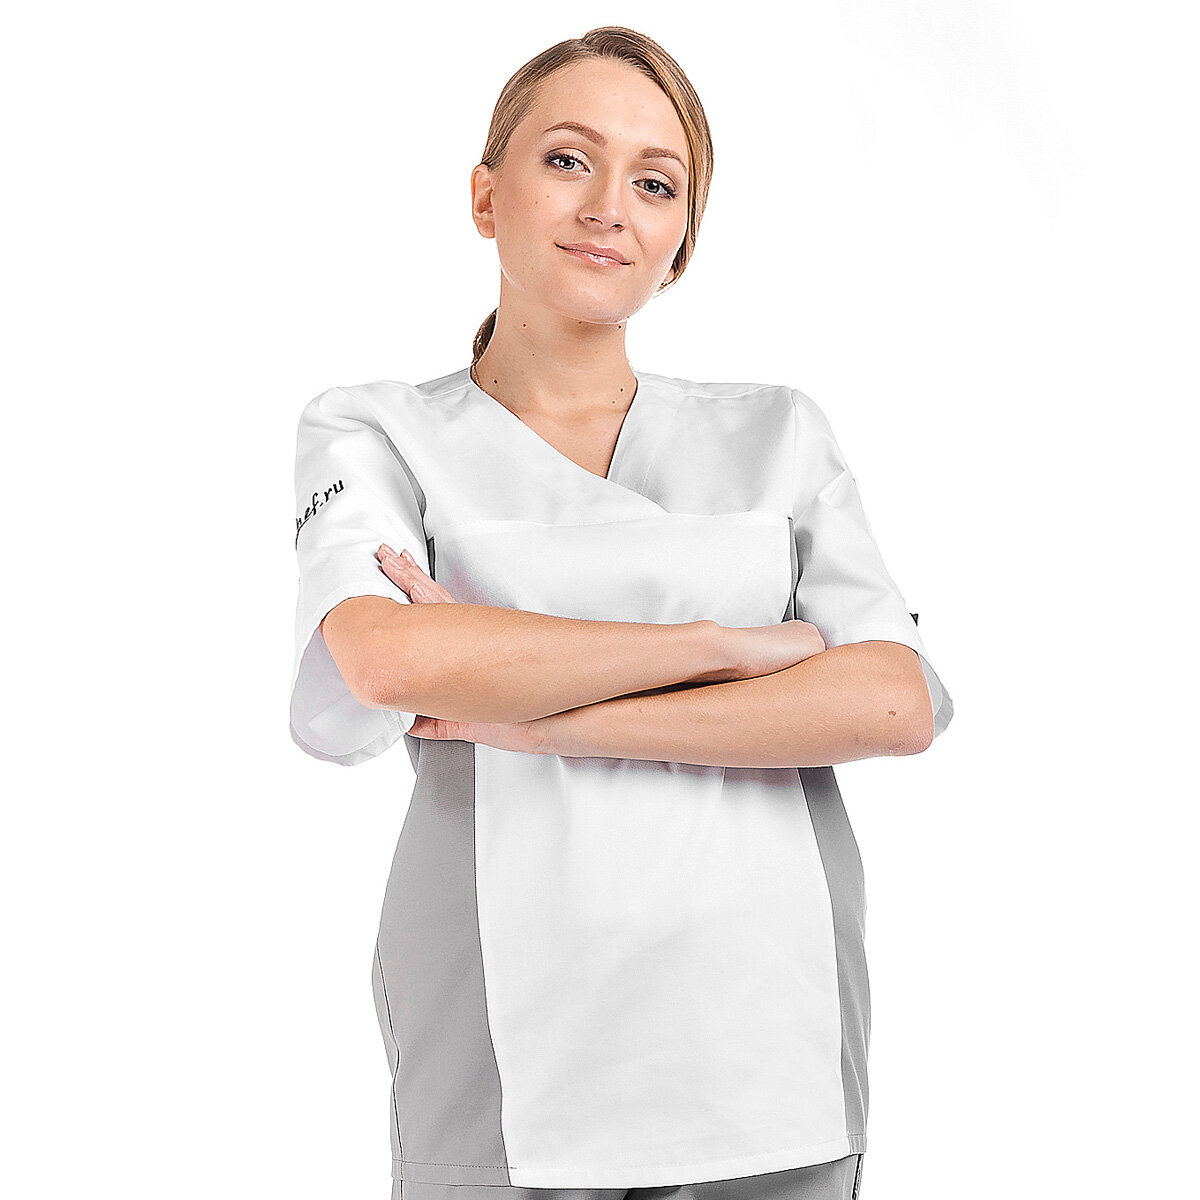 BG03 E-Chef Китель повара женский. Куртка поварская. Серый/Белый. Рукав 1/2. размер 42